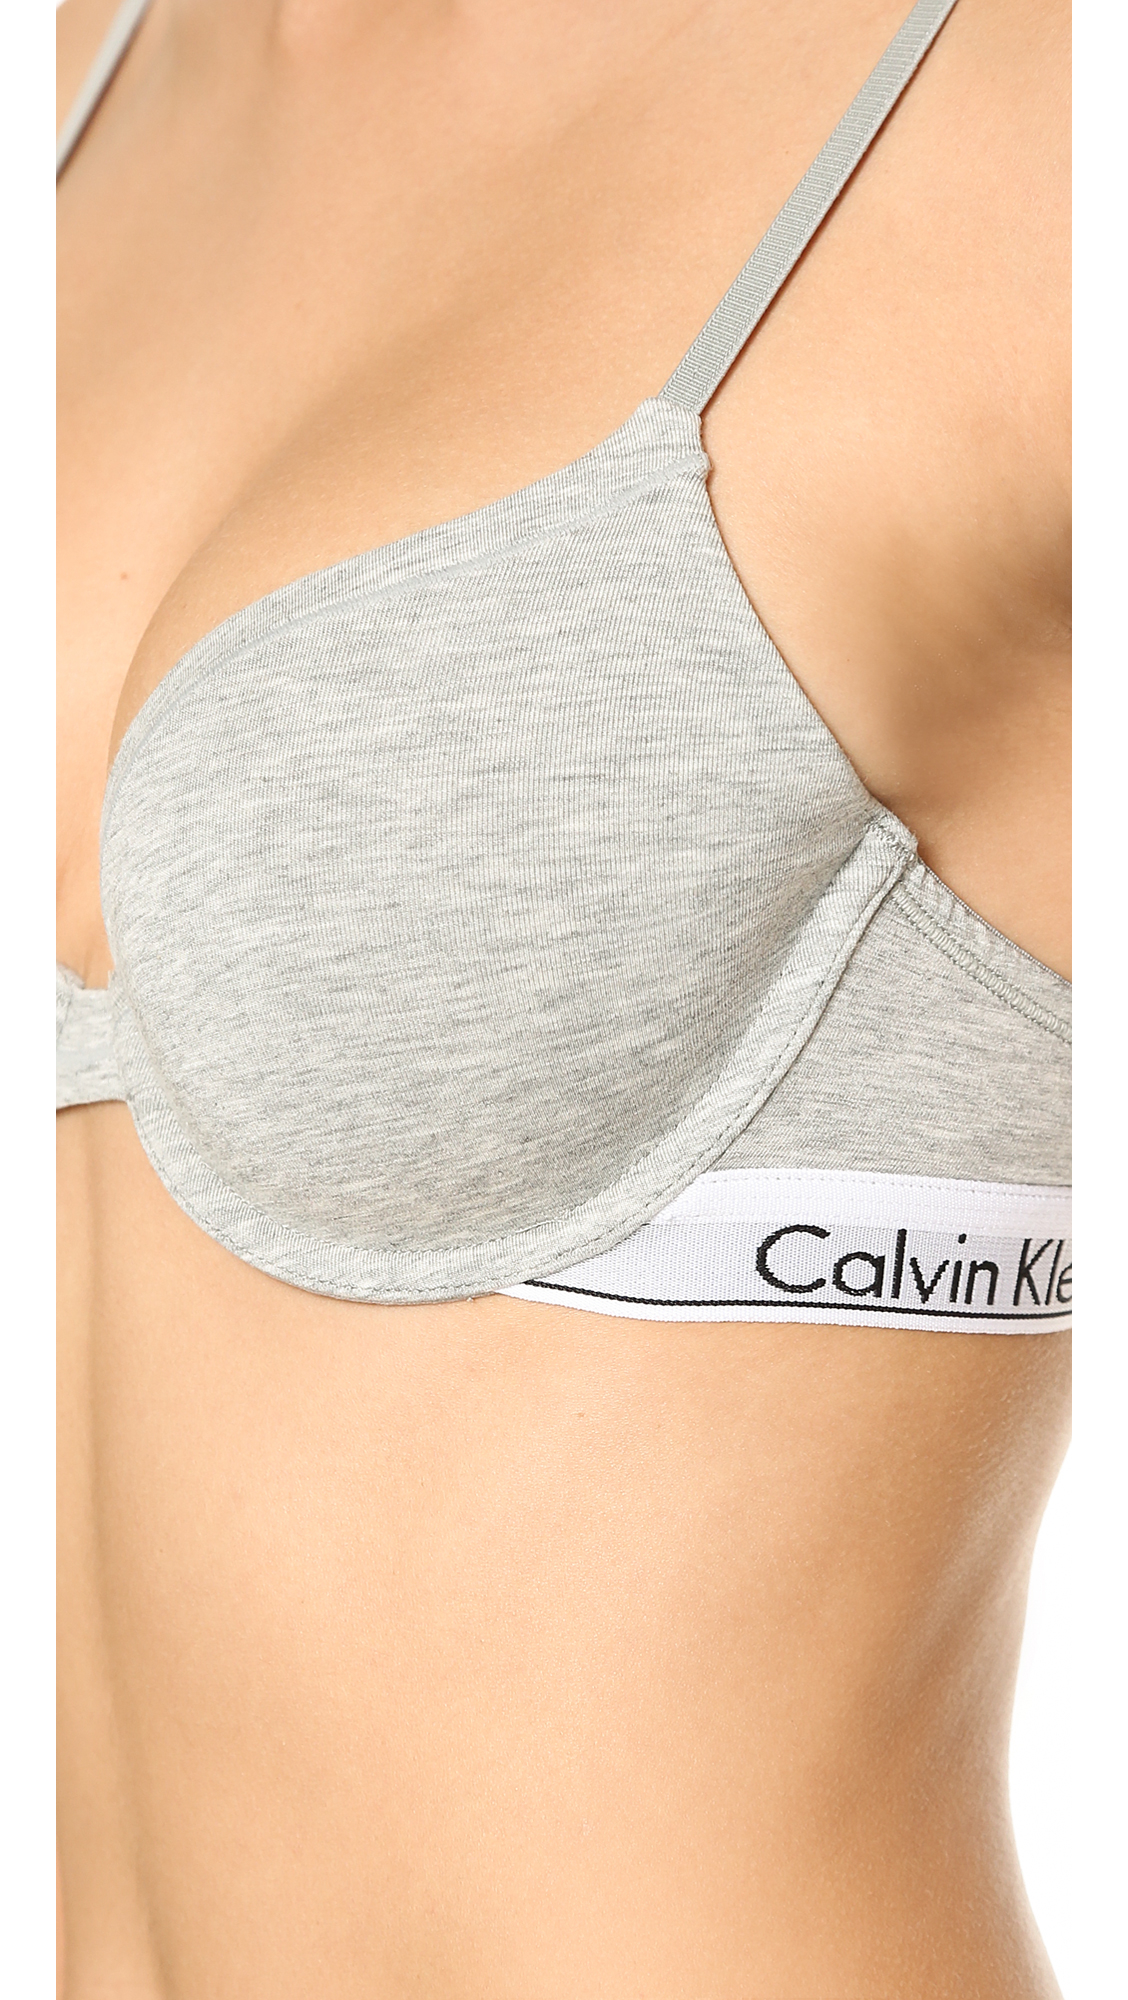 Calvin Klein Modern Cotton T-shirt Bra in Grey Heather (Gray) - Lyst